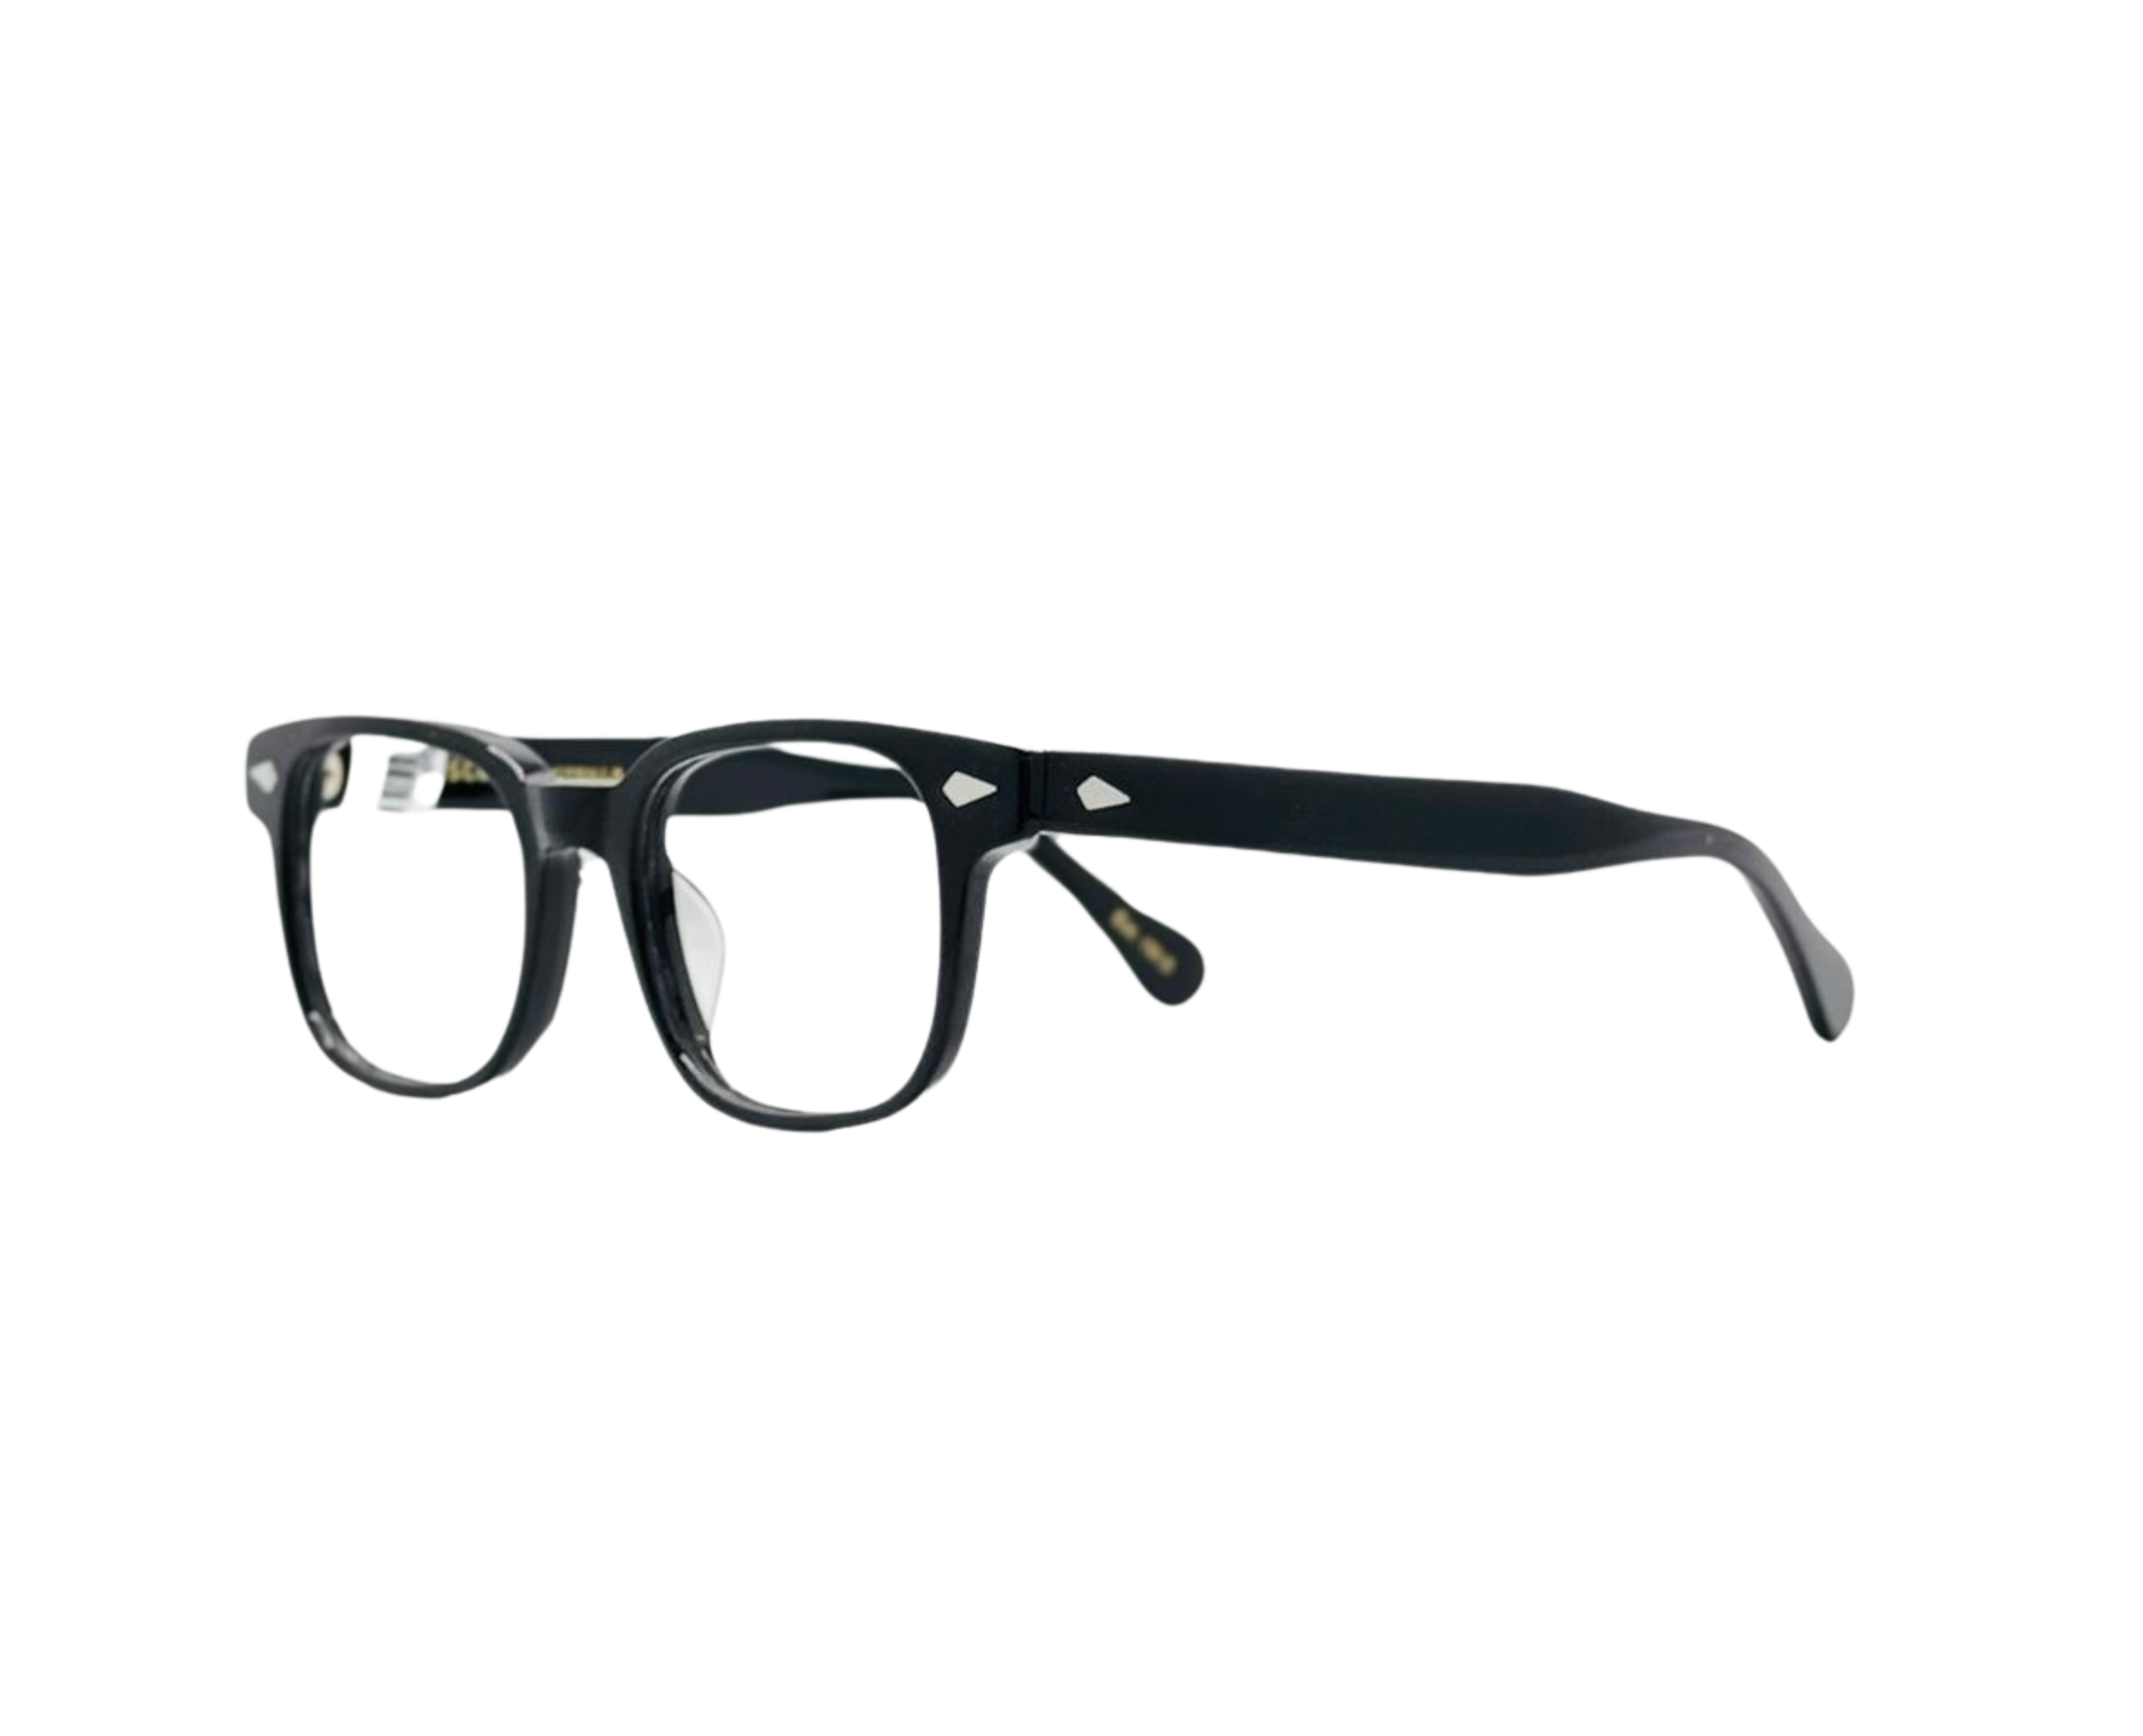 NS Luxury - J16 - Black - Eyeglasses